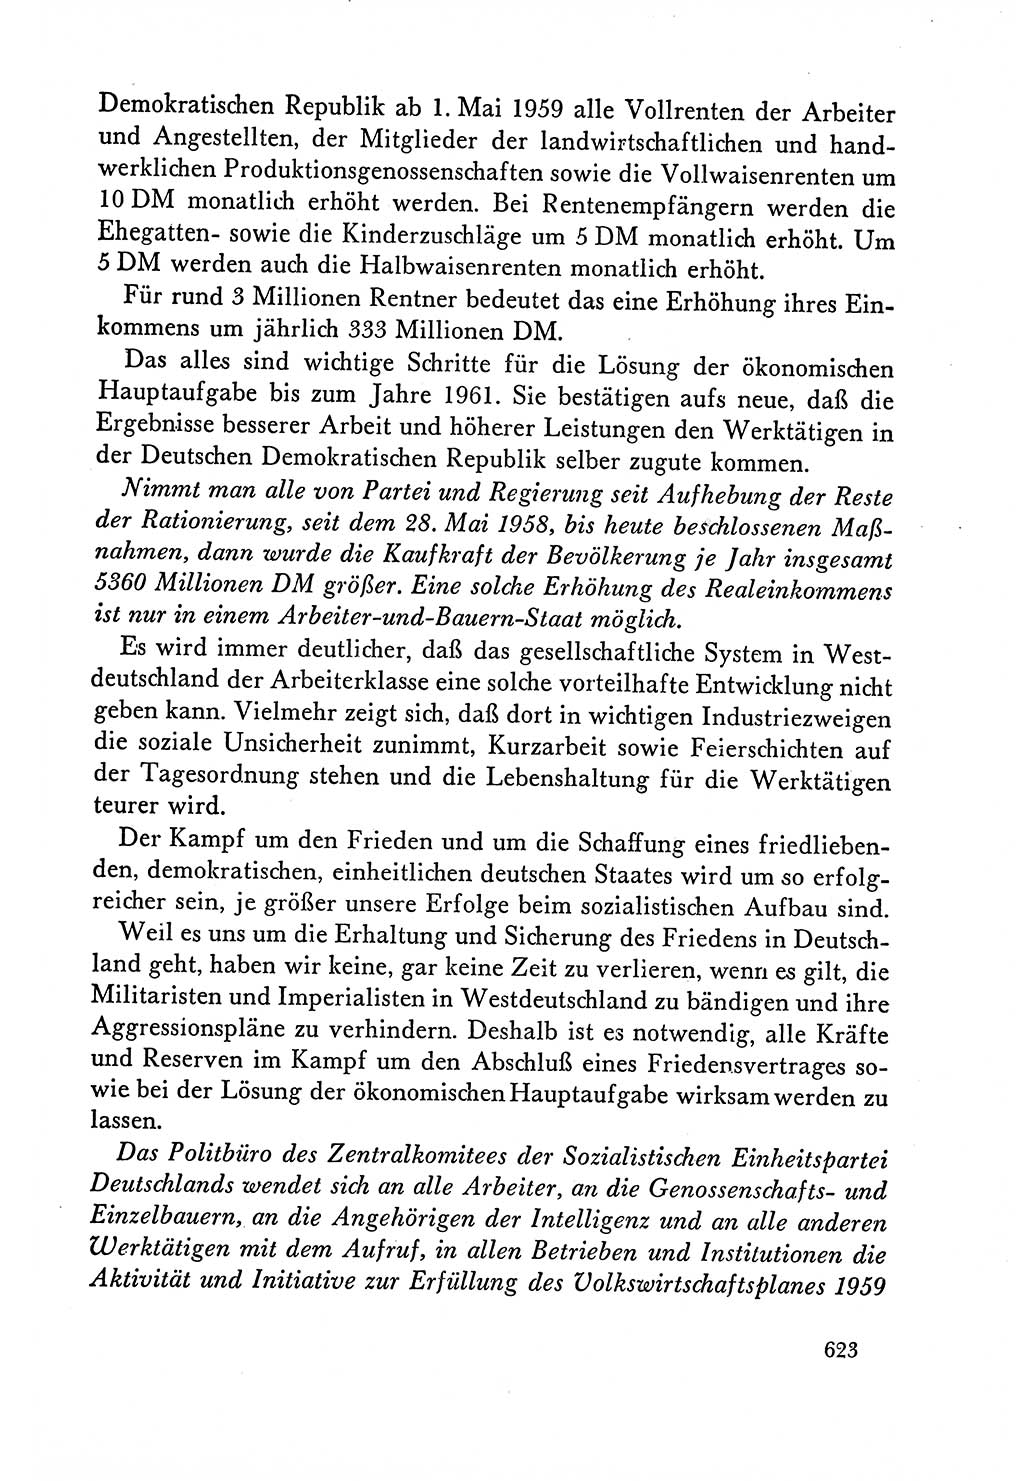 Dokumente der Sozialistischen Einheitspartei Deutschlands (SED) [Deutsche Demokratische Republik (DDR)] 1958-1959, Seite 623 (Dok. SED DDR 1958-1959, S. 623)